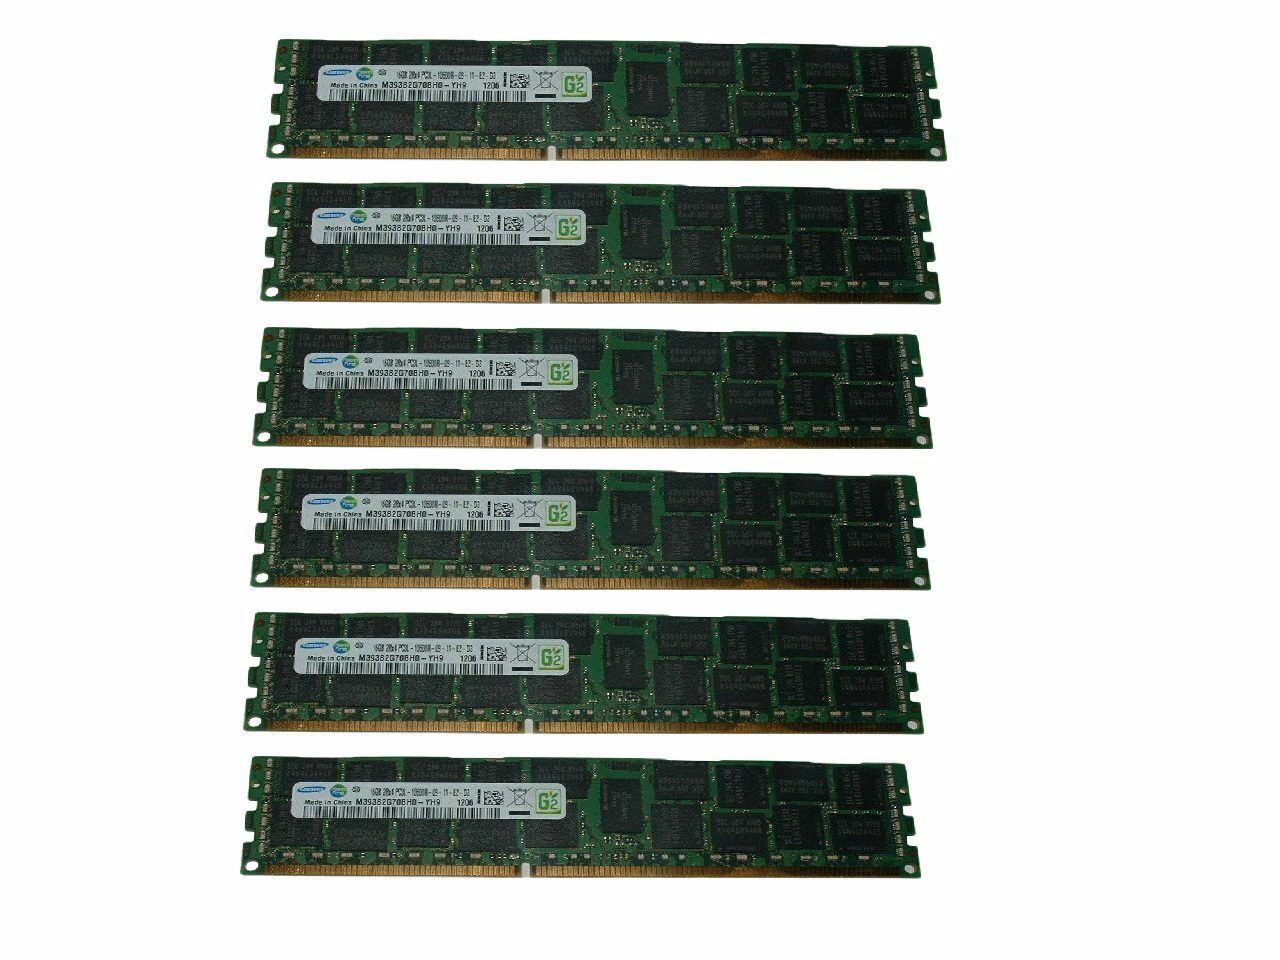 96GB (6x 16GB) 10600R RAM Memory For Dell Poweredge R510 R610 R620 R710 R720